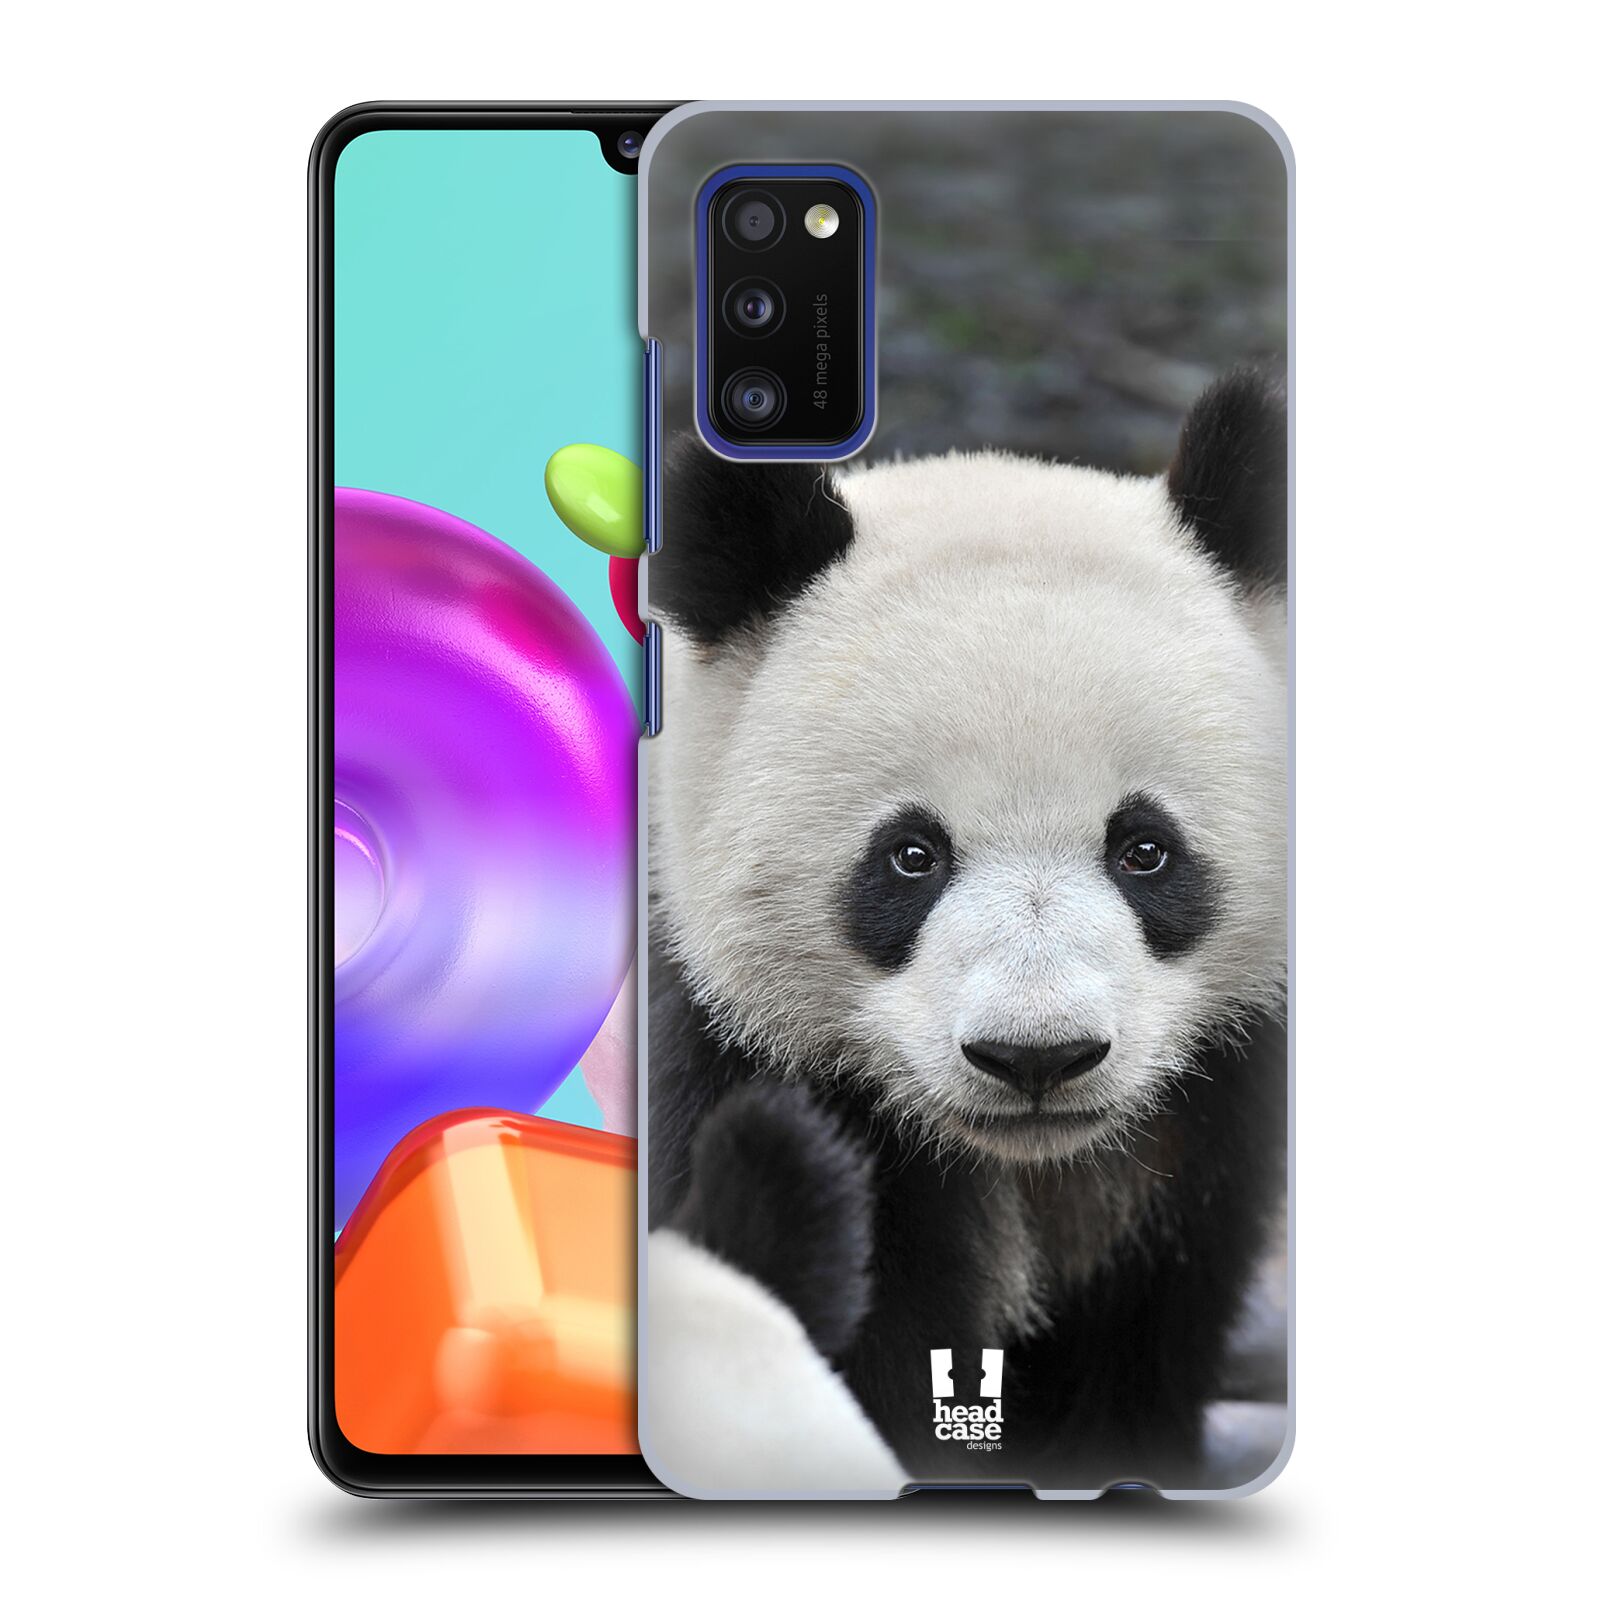 Zadní obal pro mobil Samsung Galaxy A41 - HEAD CASE - Svět zvířat medvěd panda